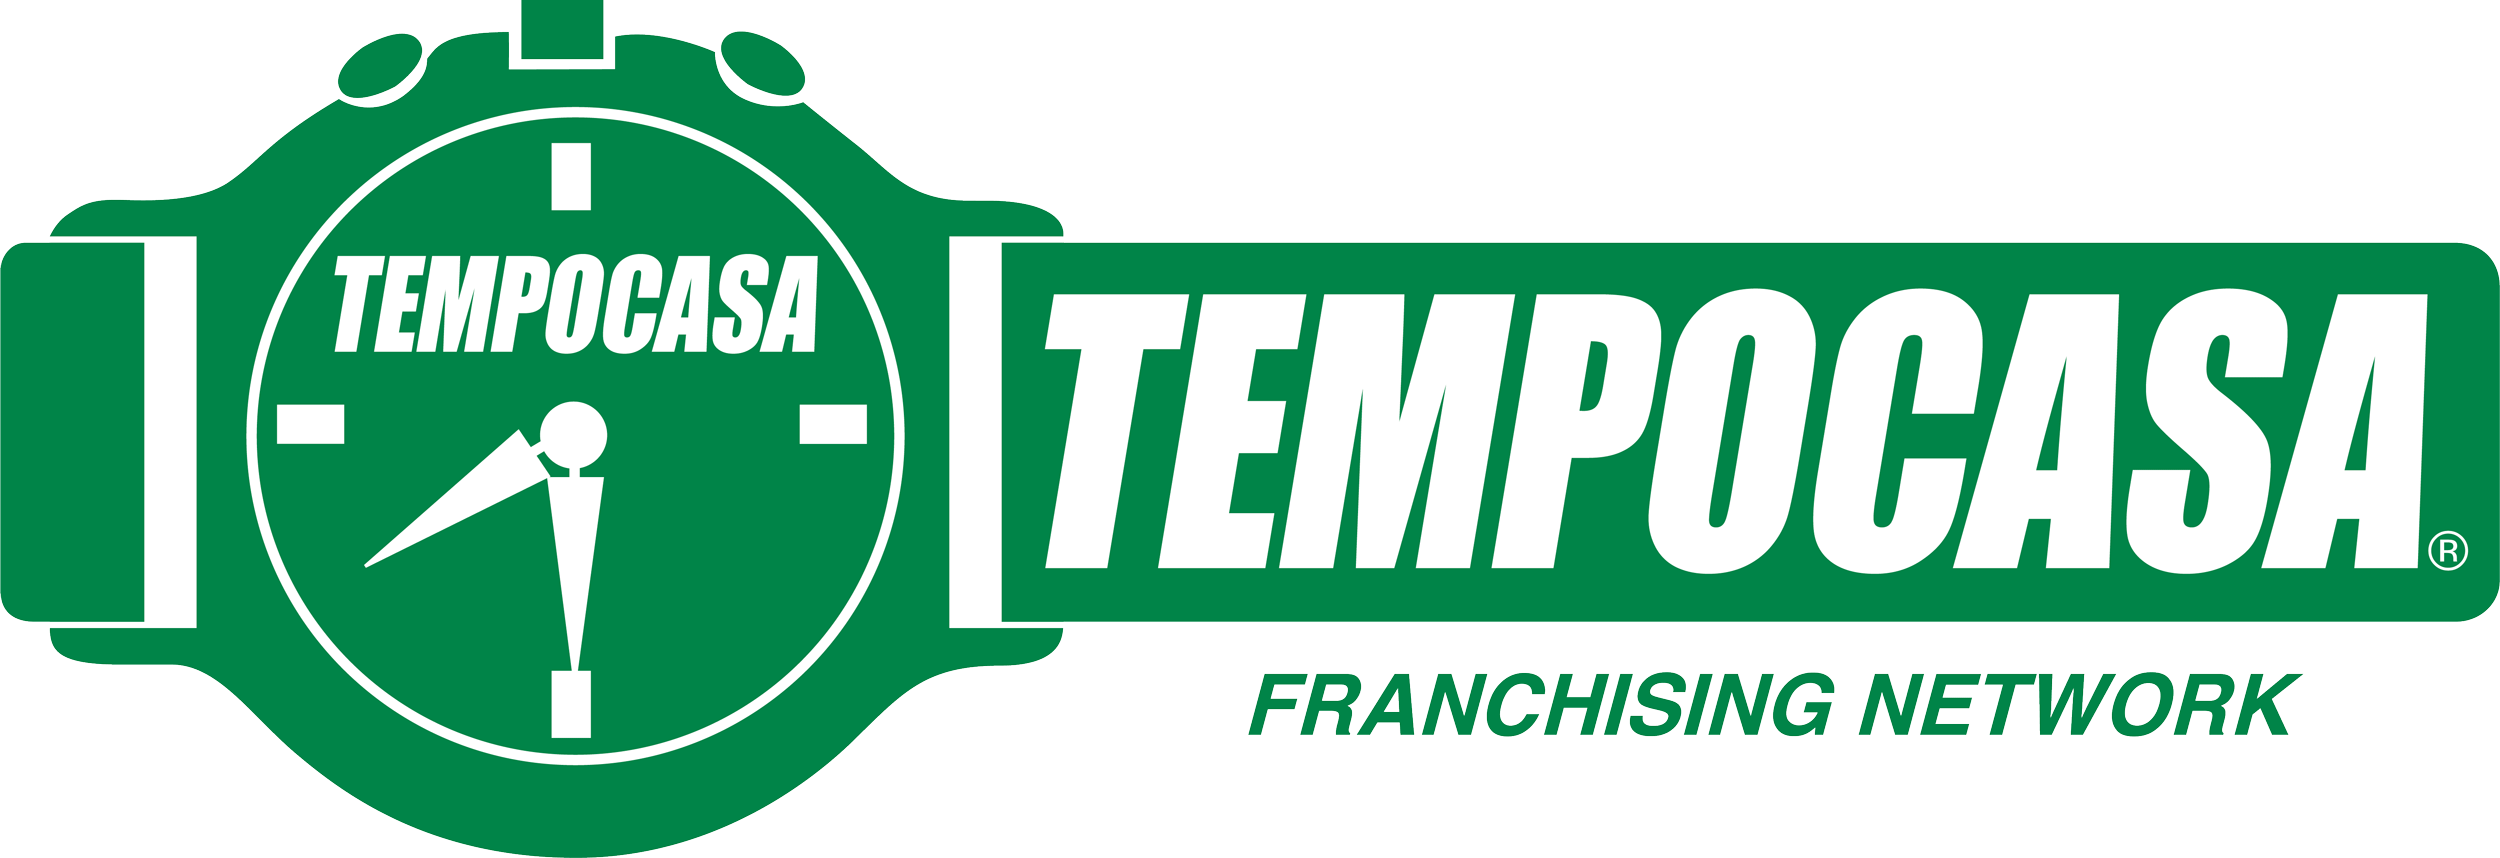 Abano Terme - Tempocasa